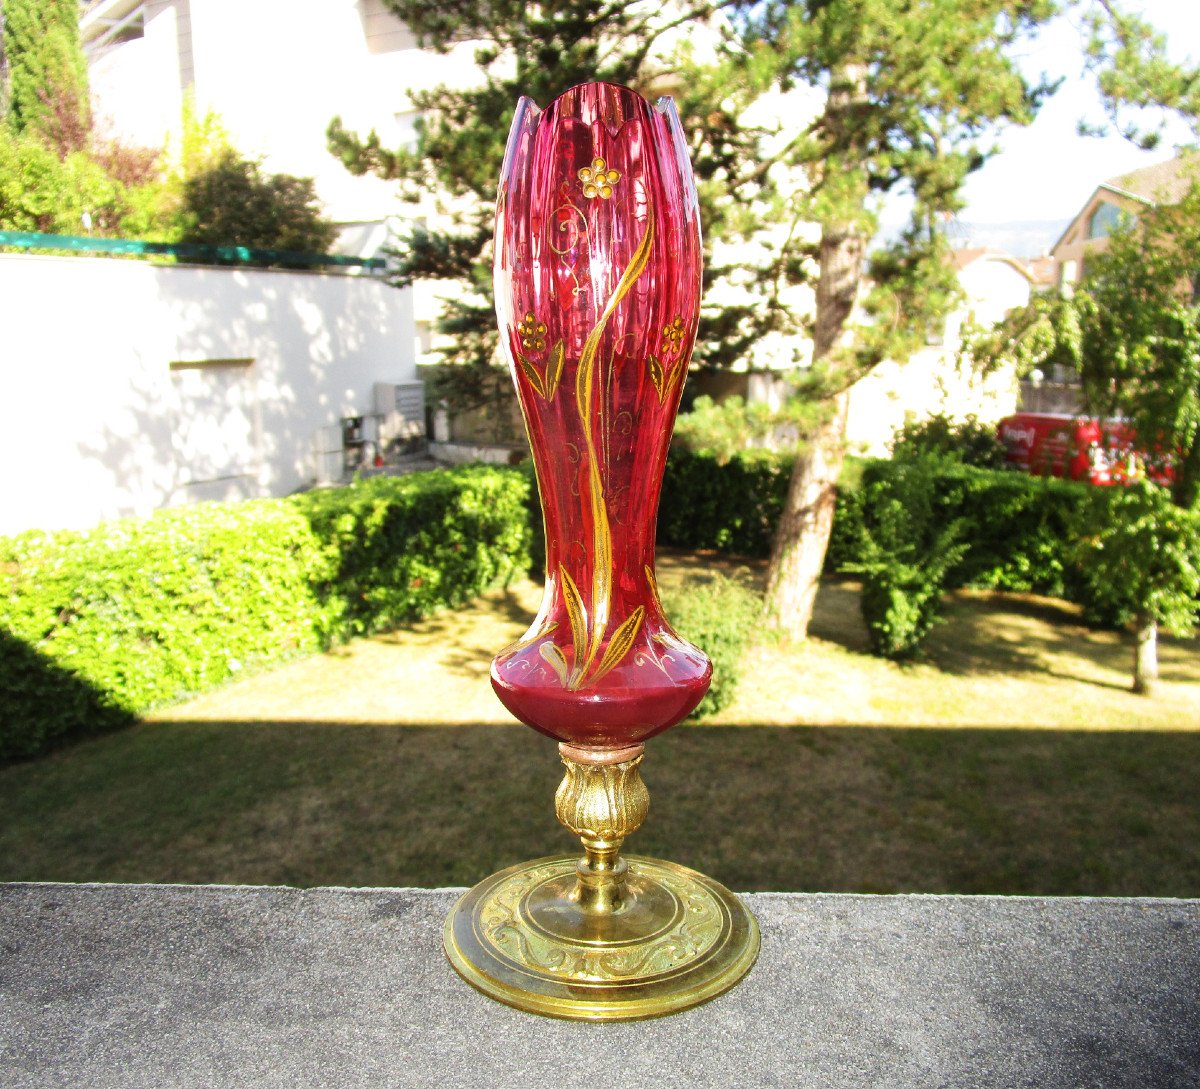 Ancien Superbe Vase Tulipe Art Nouveau En Bronze Et Verre émaillé Rehaussé à l'Or Fin.